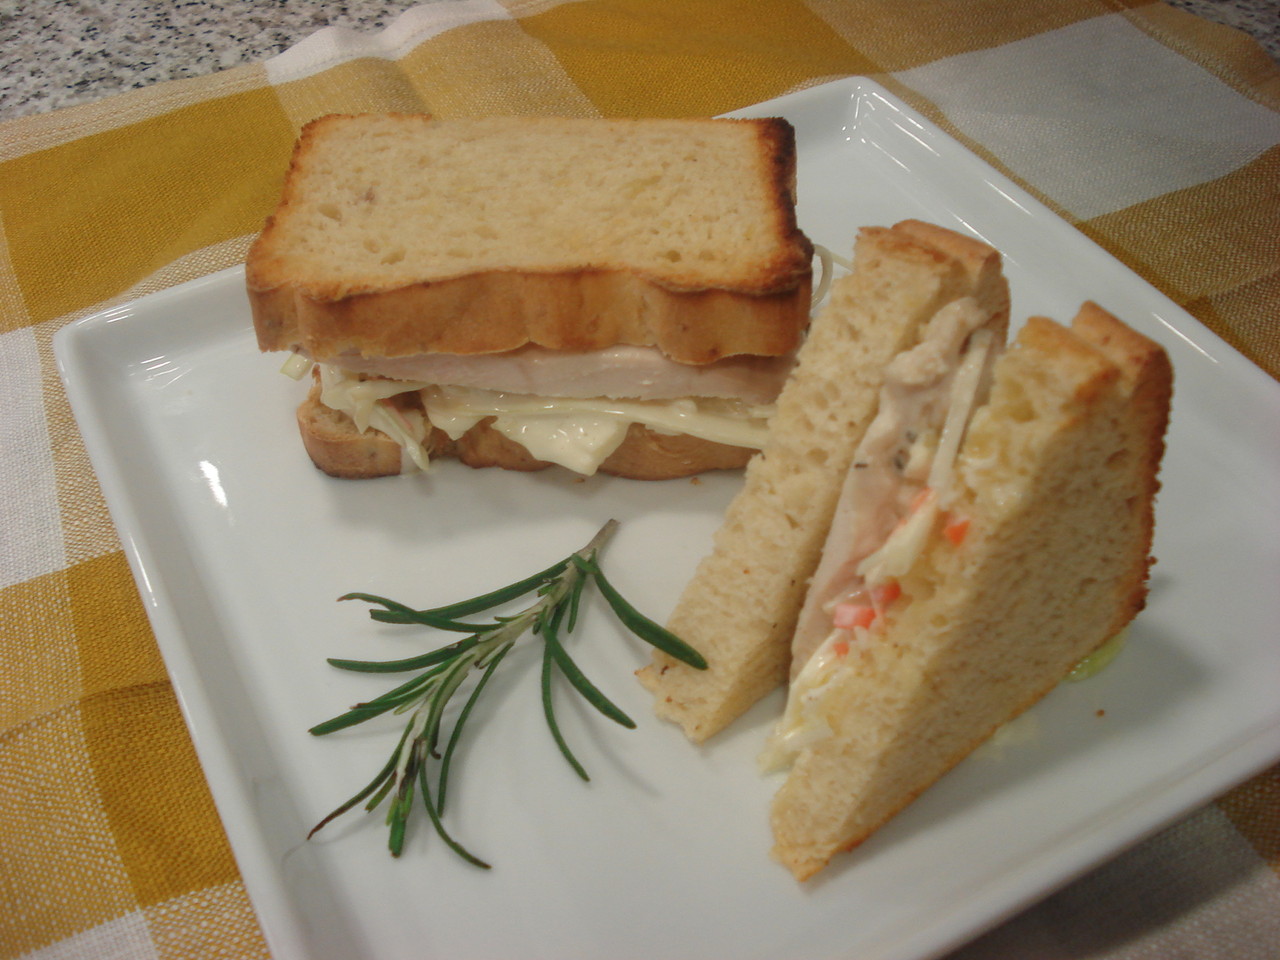 Sandwich de pollo y colslaw; con pan de patata